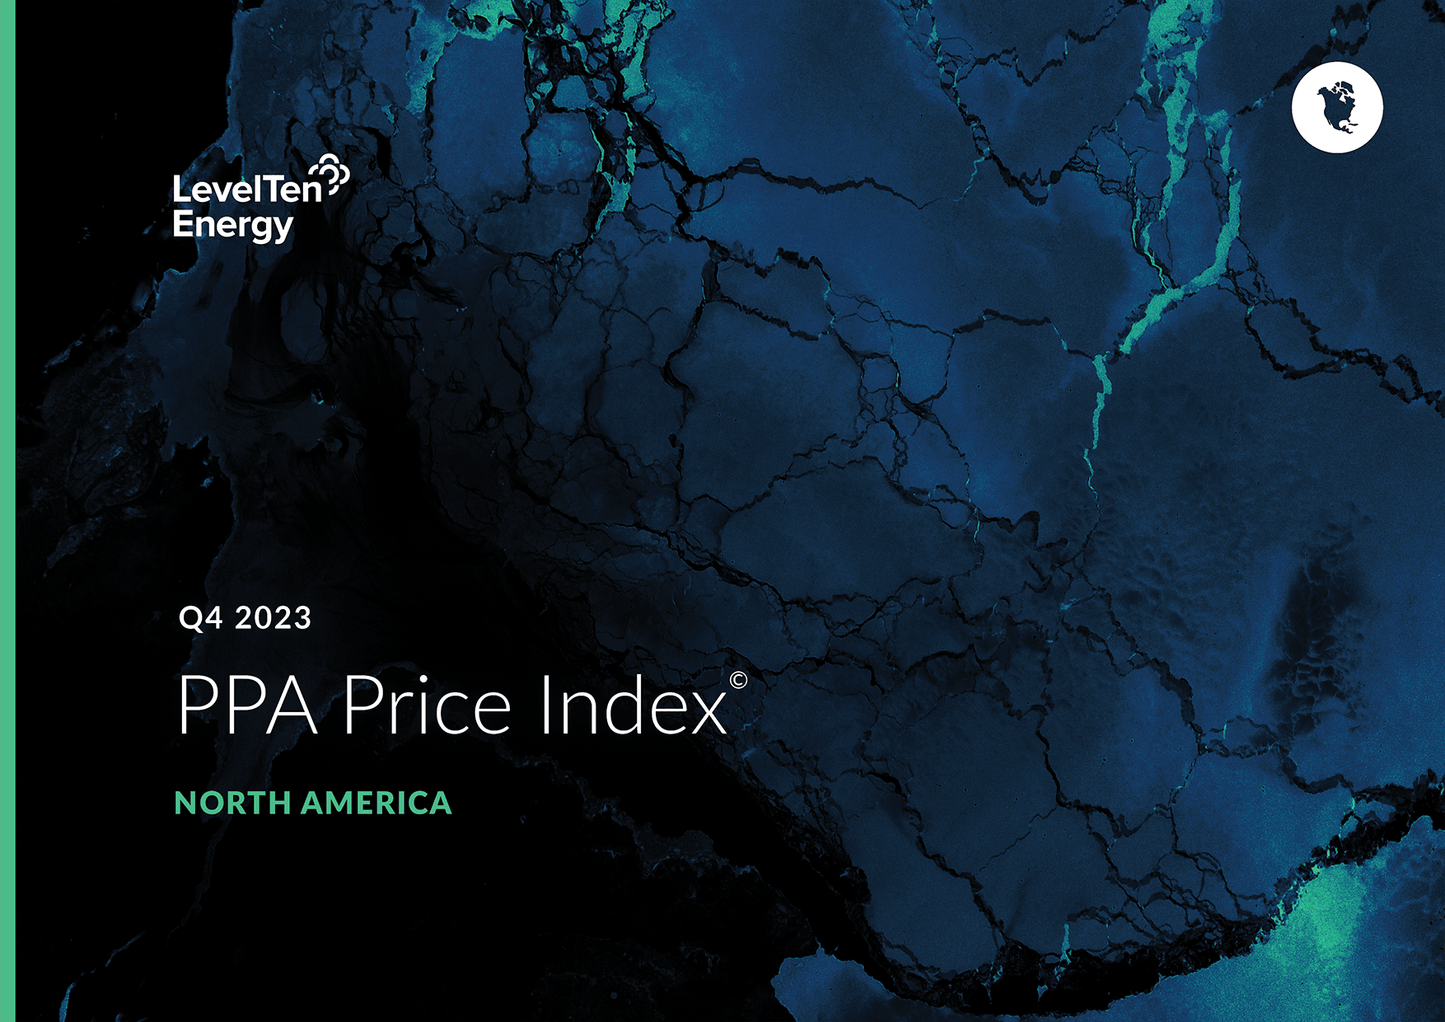 Q4 2023 PPA Price Index - North America